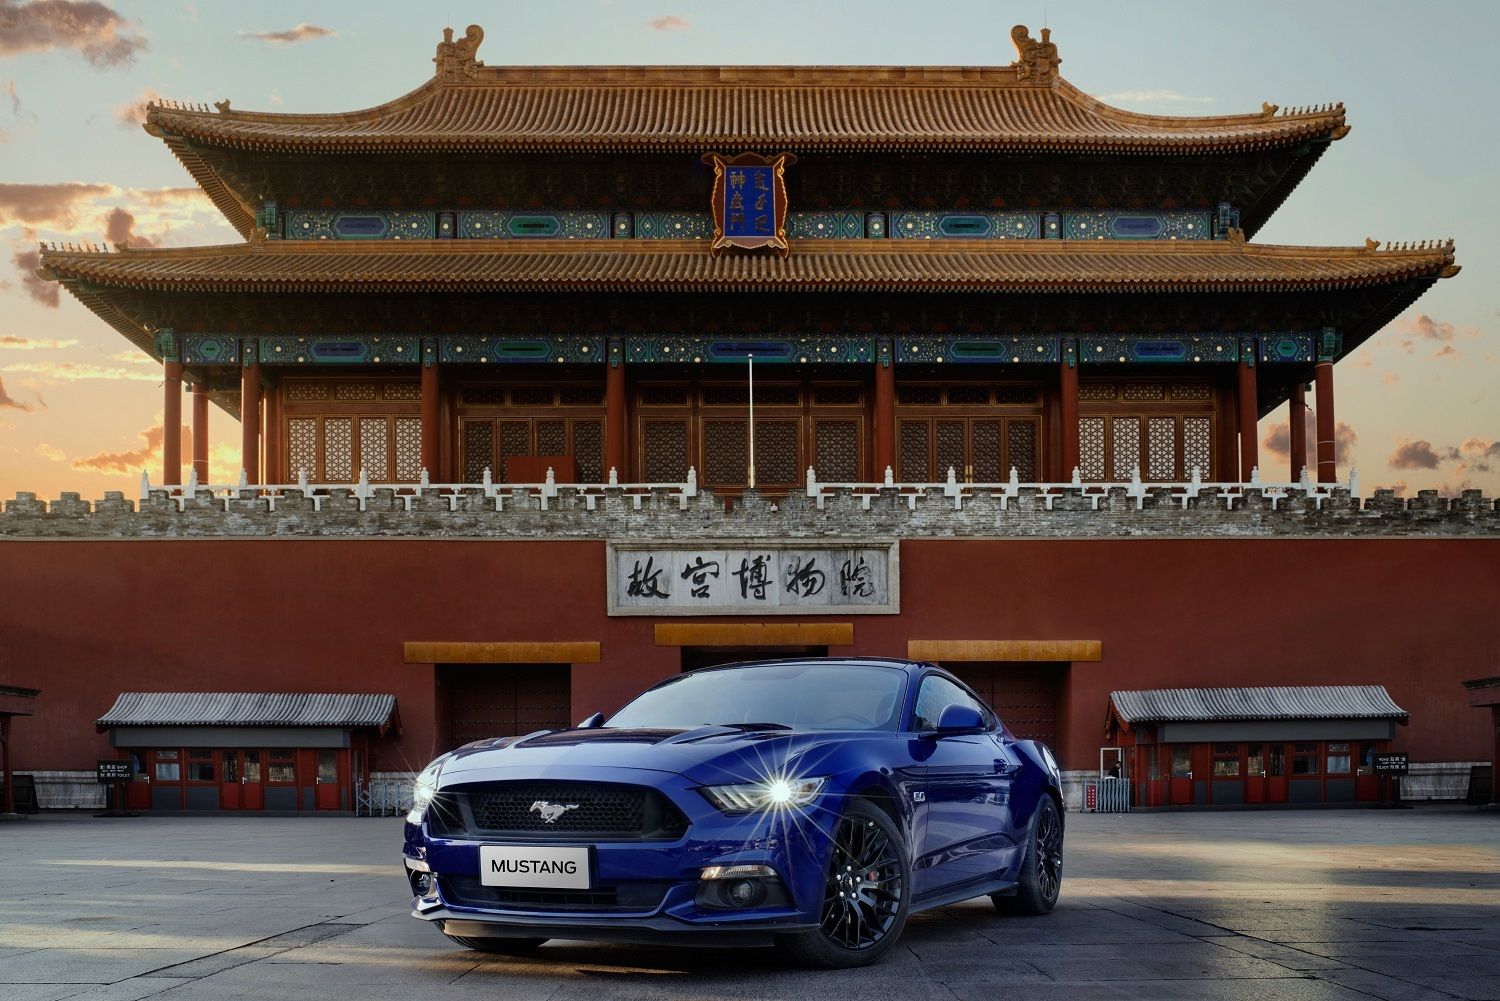 Ford Mustang je najpredávanejším športiakom na svete